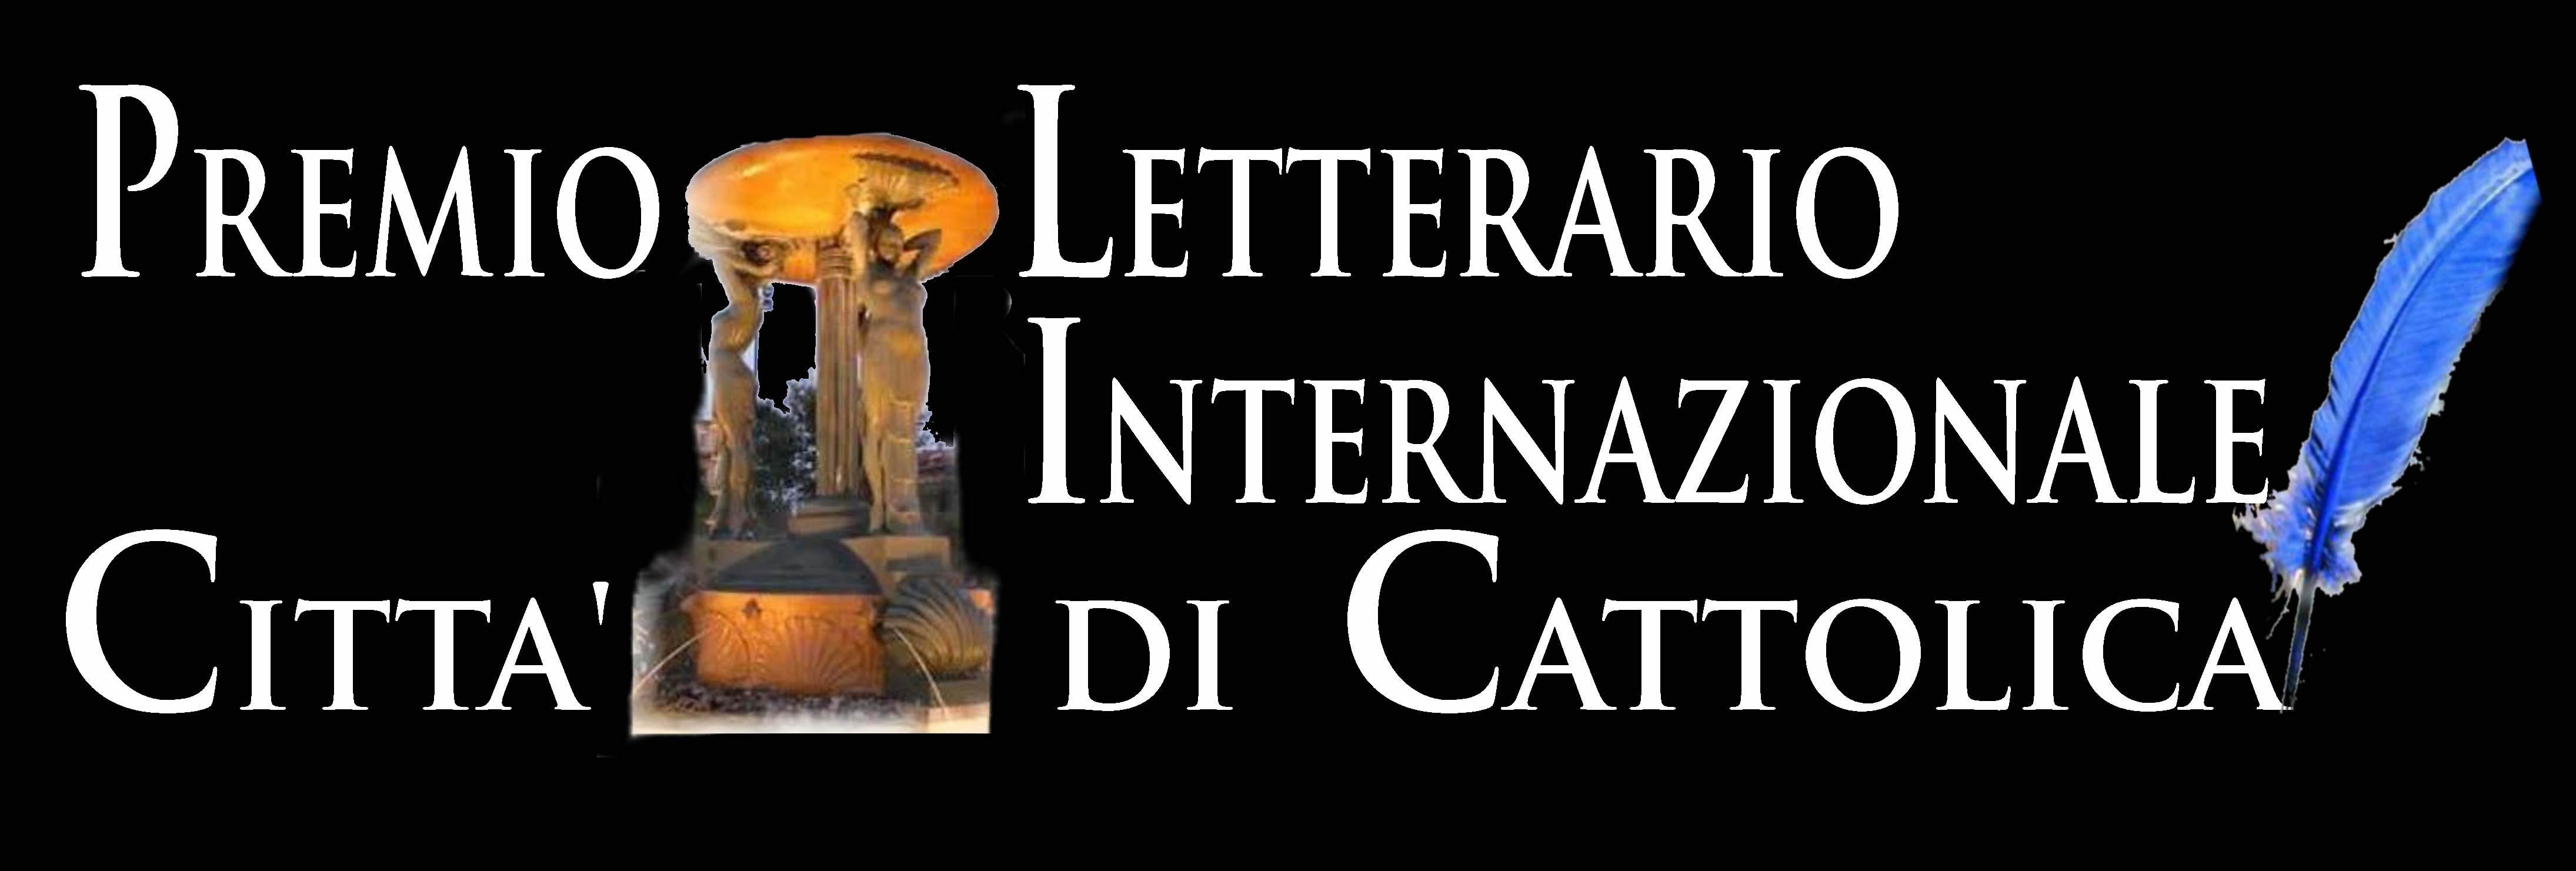 Premio Letterario Internazionale Città di Cattolica – Pegasus Literary Awards 2018